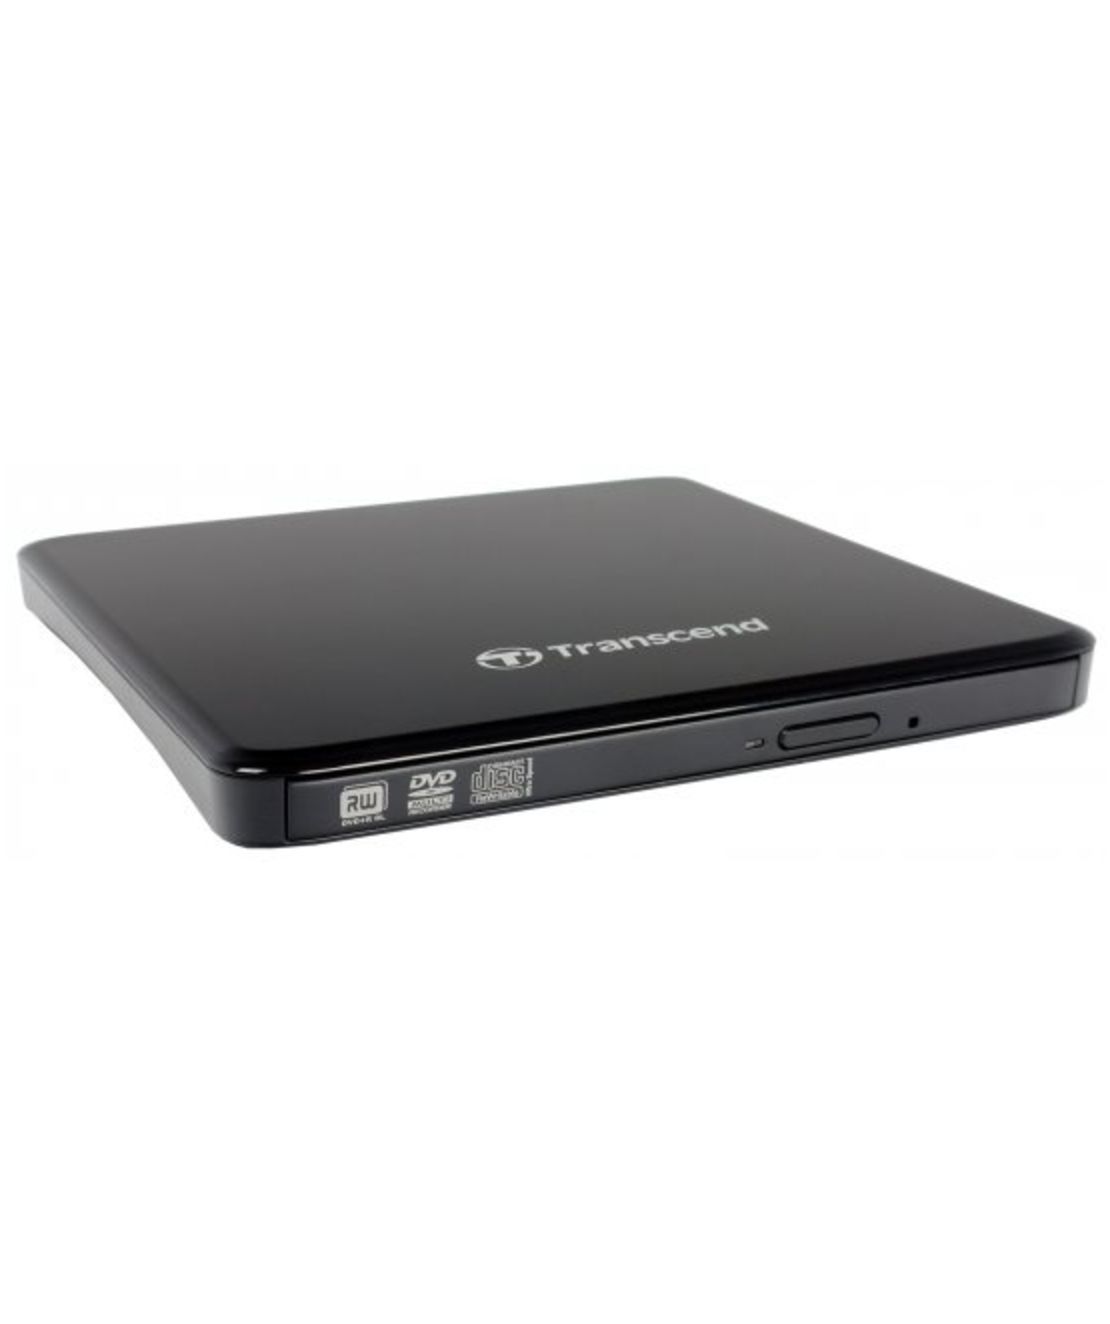 צורב חיצוני Transcend Super Slim Portable DVD±RW x8 USB 2.0 TS8XDVDS-K